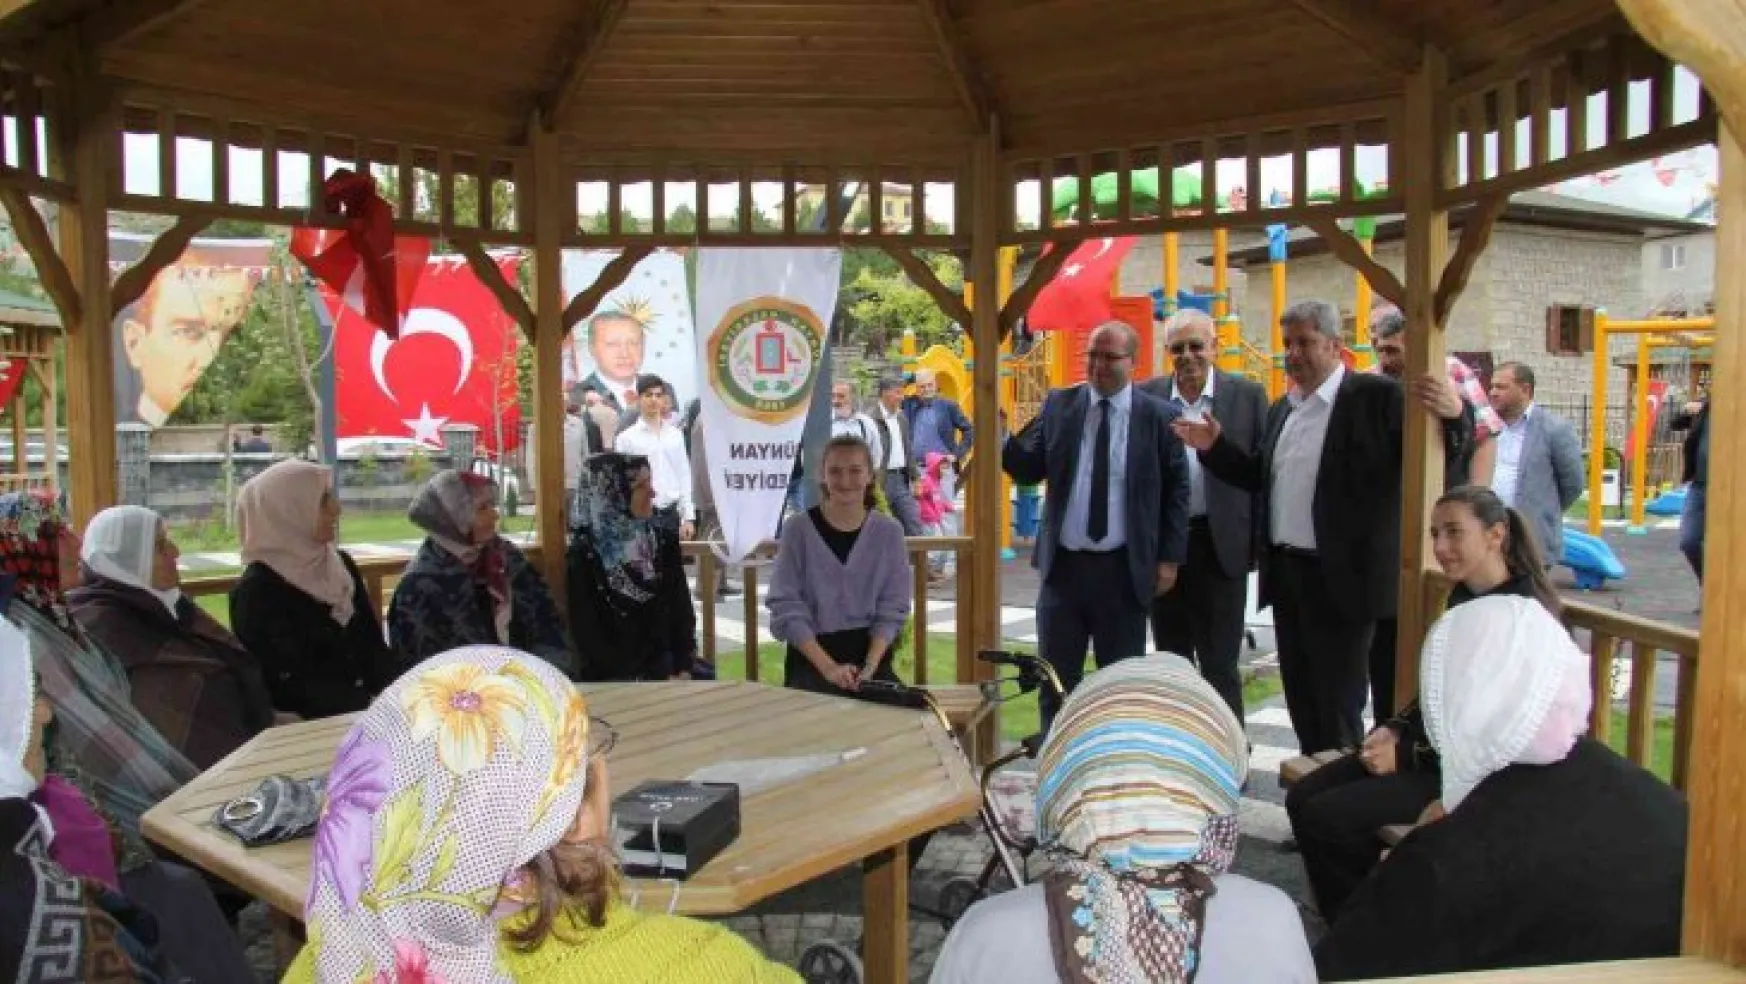 Bünyan Belediyesi Şadi Korkmaz Parkı hizmete açıldı